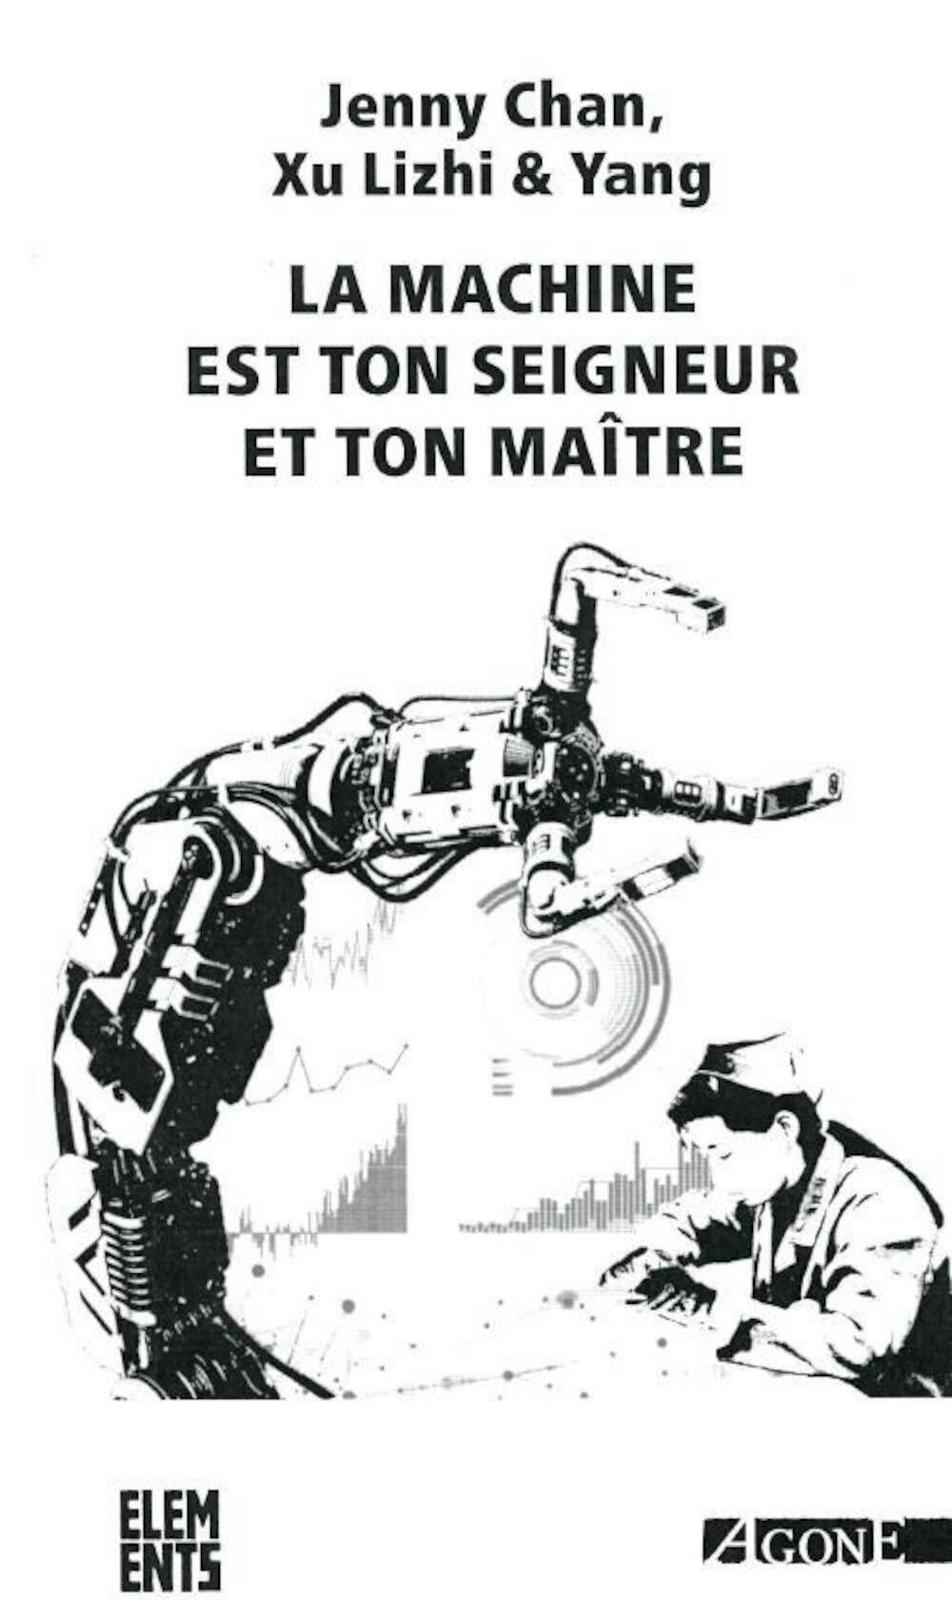 La Machine est ton seigneur et ton maître (French language, 2022, éditions Agone)